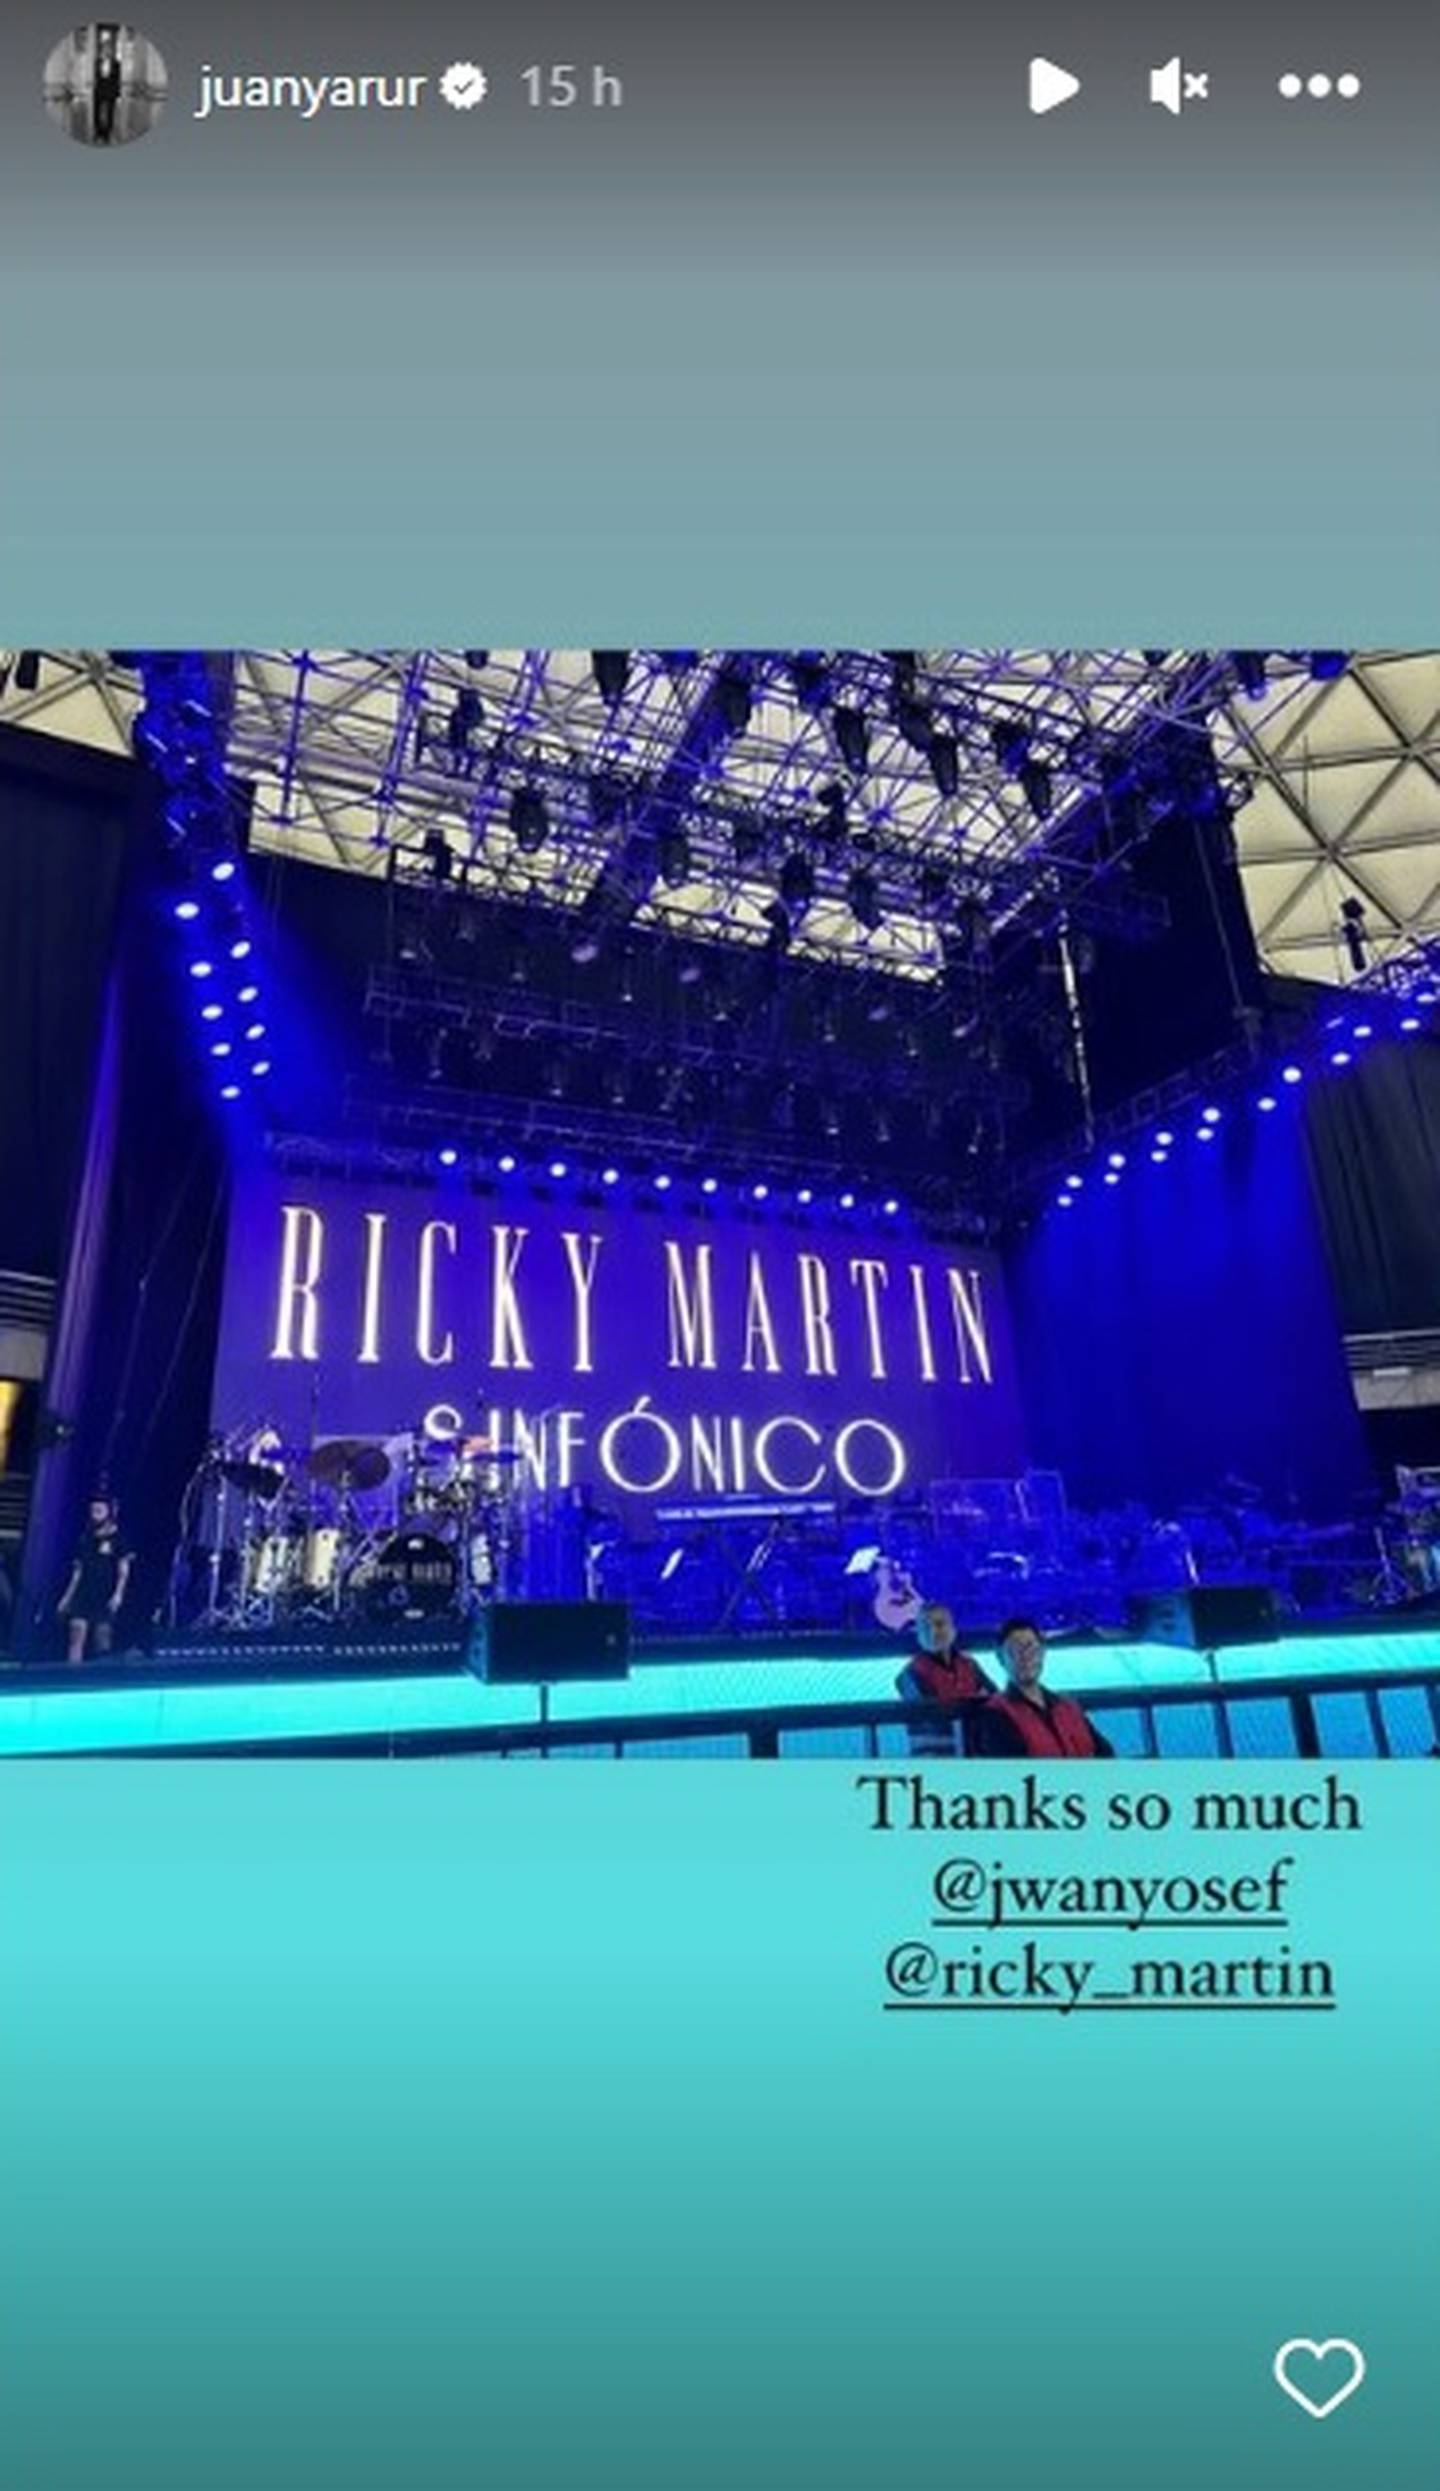 El socialité nacional agradeció la invitación del novio de Ricky Martin a su concierto de anoche en el Movistar Arena.